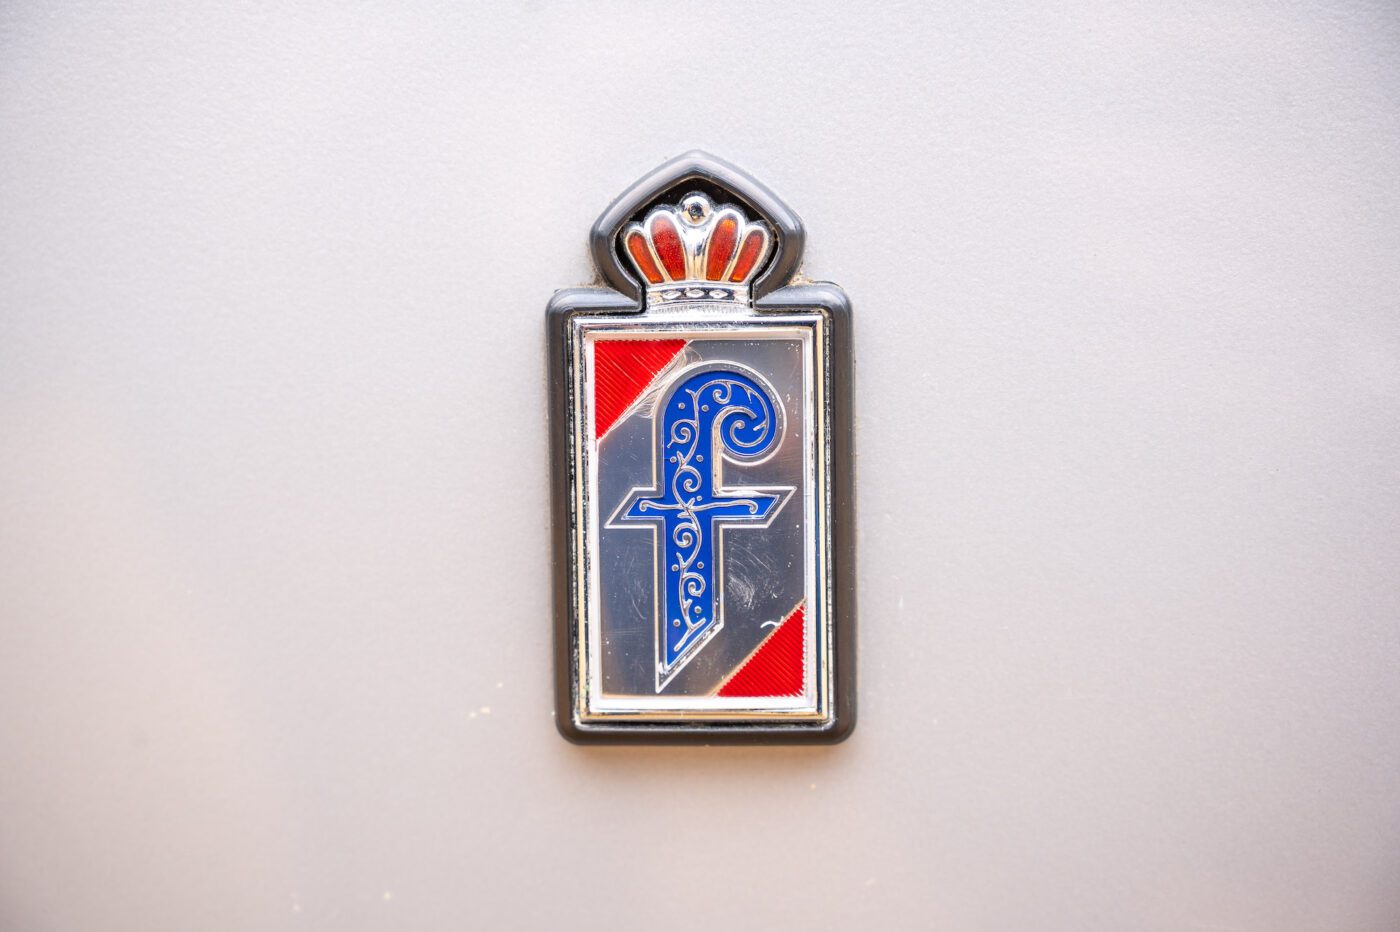 Peugeot 504 Cabriolet Pininfarina badge